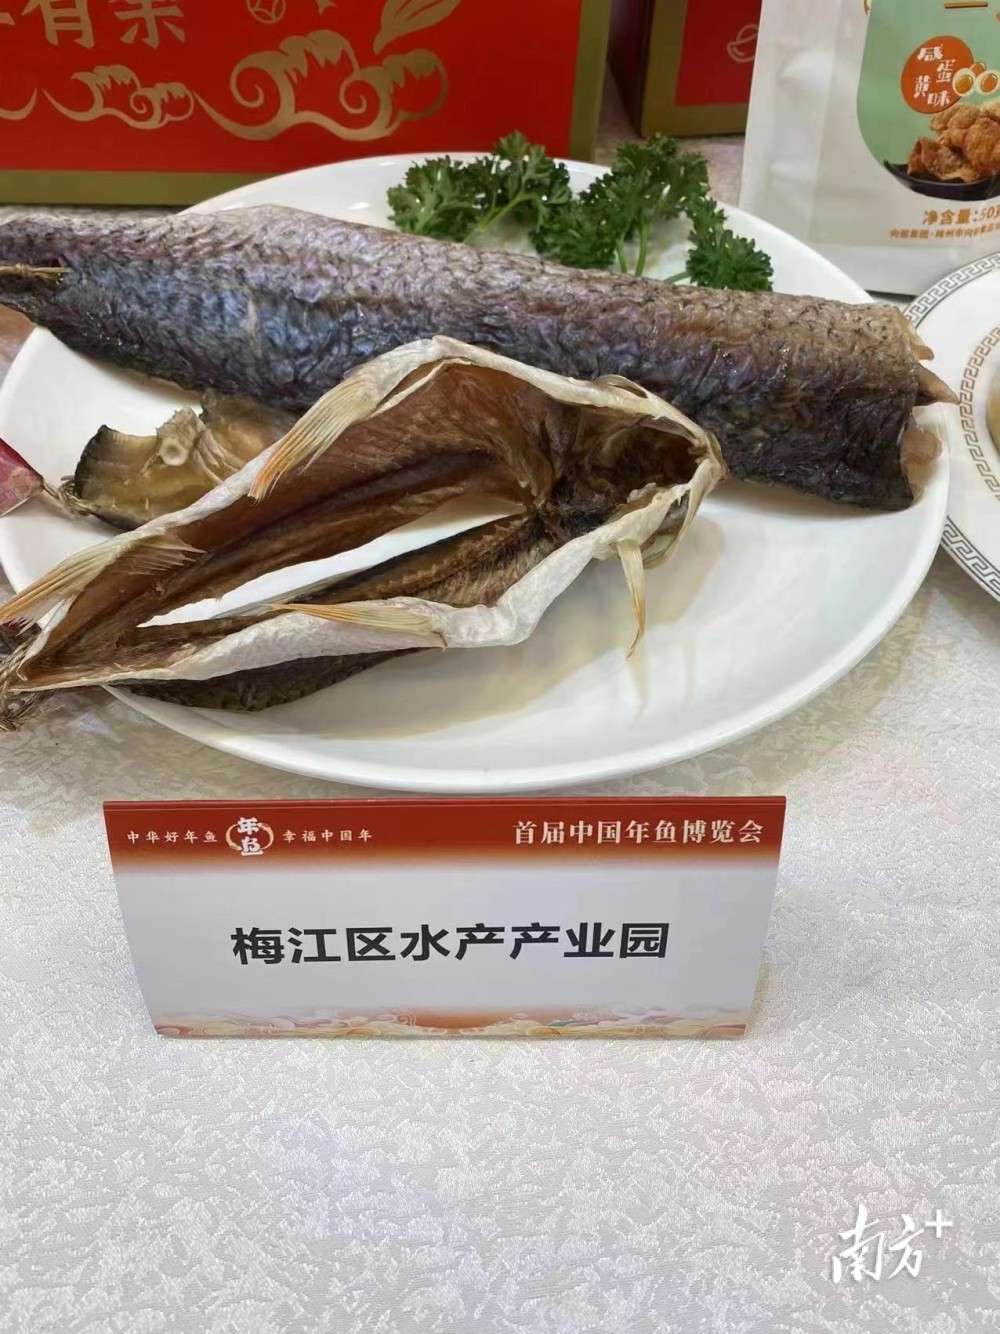 梅州多款水产加工品亮相首届中国年鱼博览会